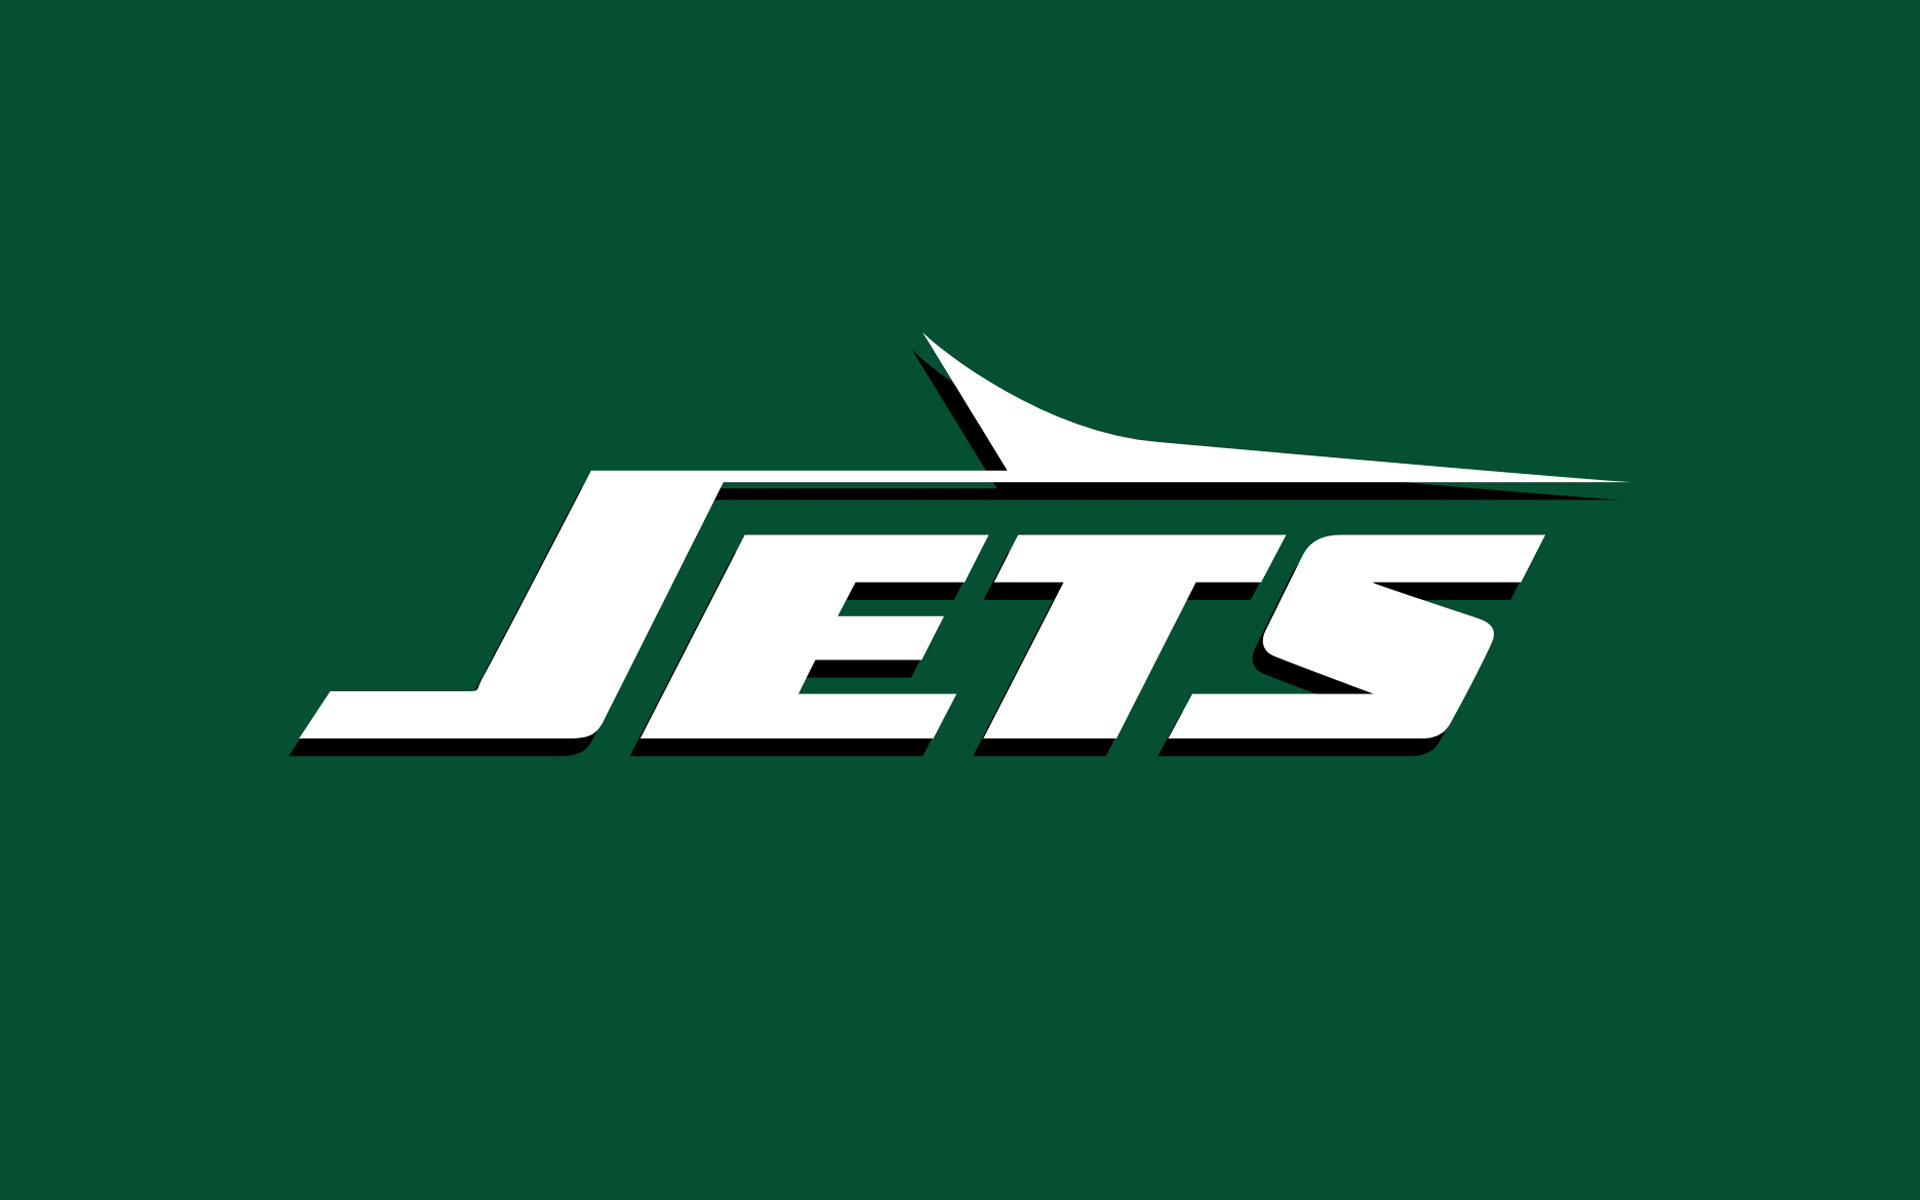 New York Jets Nfl Football Gj Wallpaper